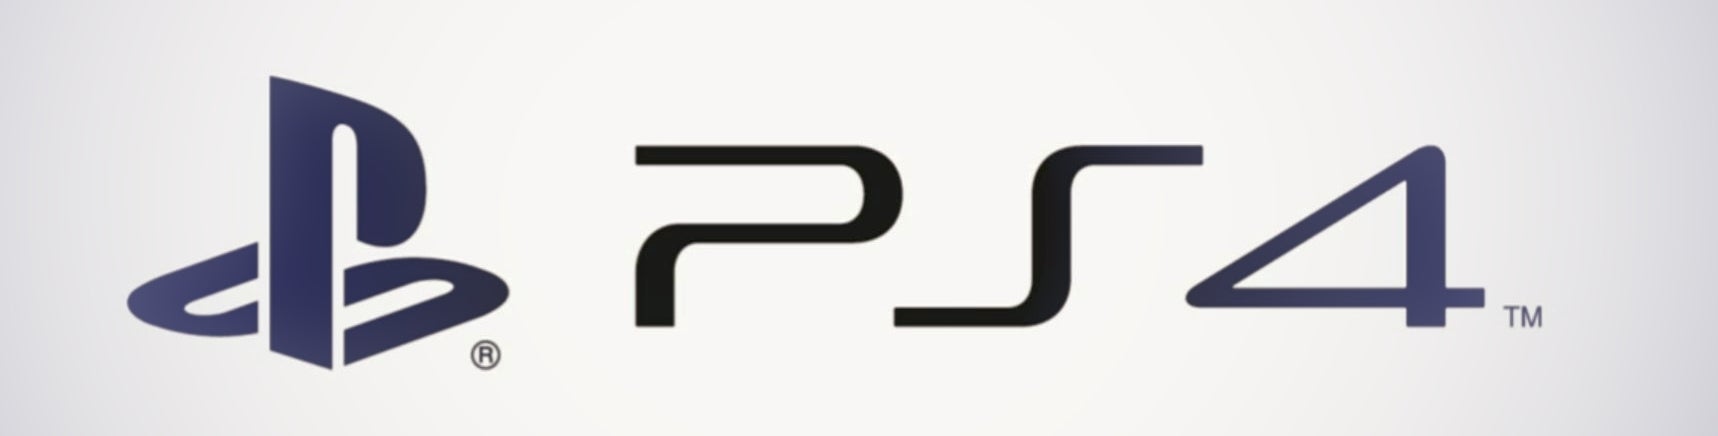 Afbeeldingen van PlayStation 4 bestuurbaar met je stem